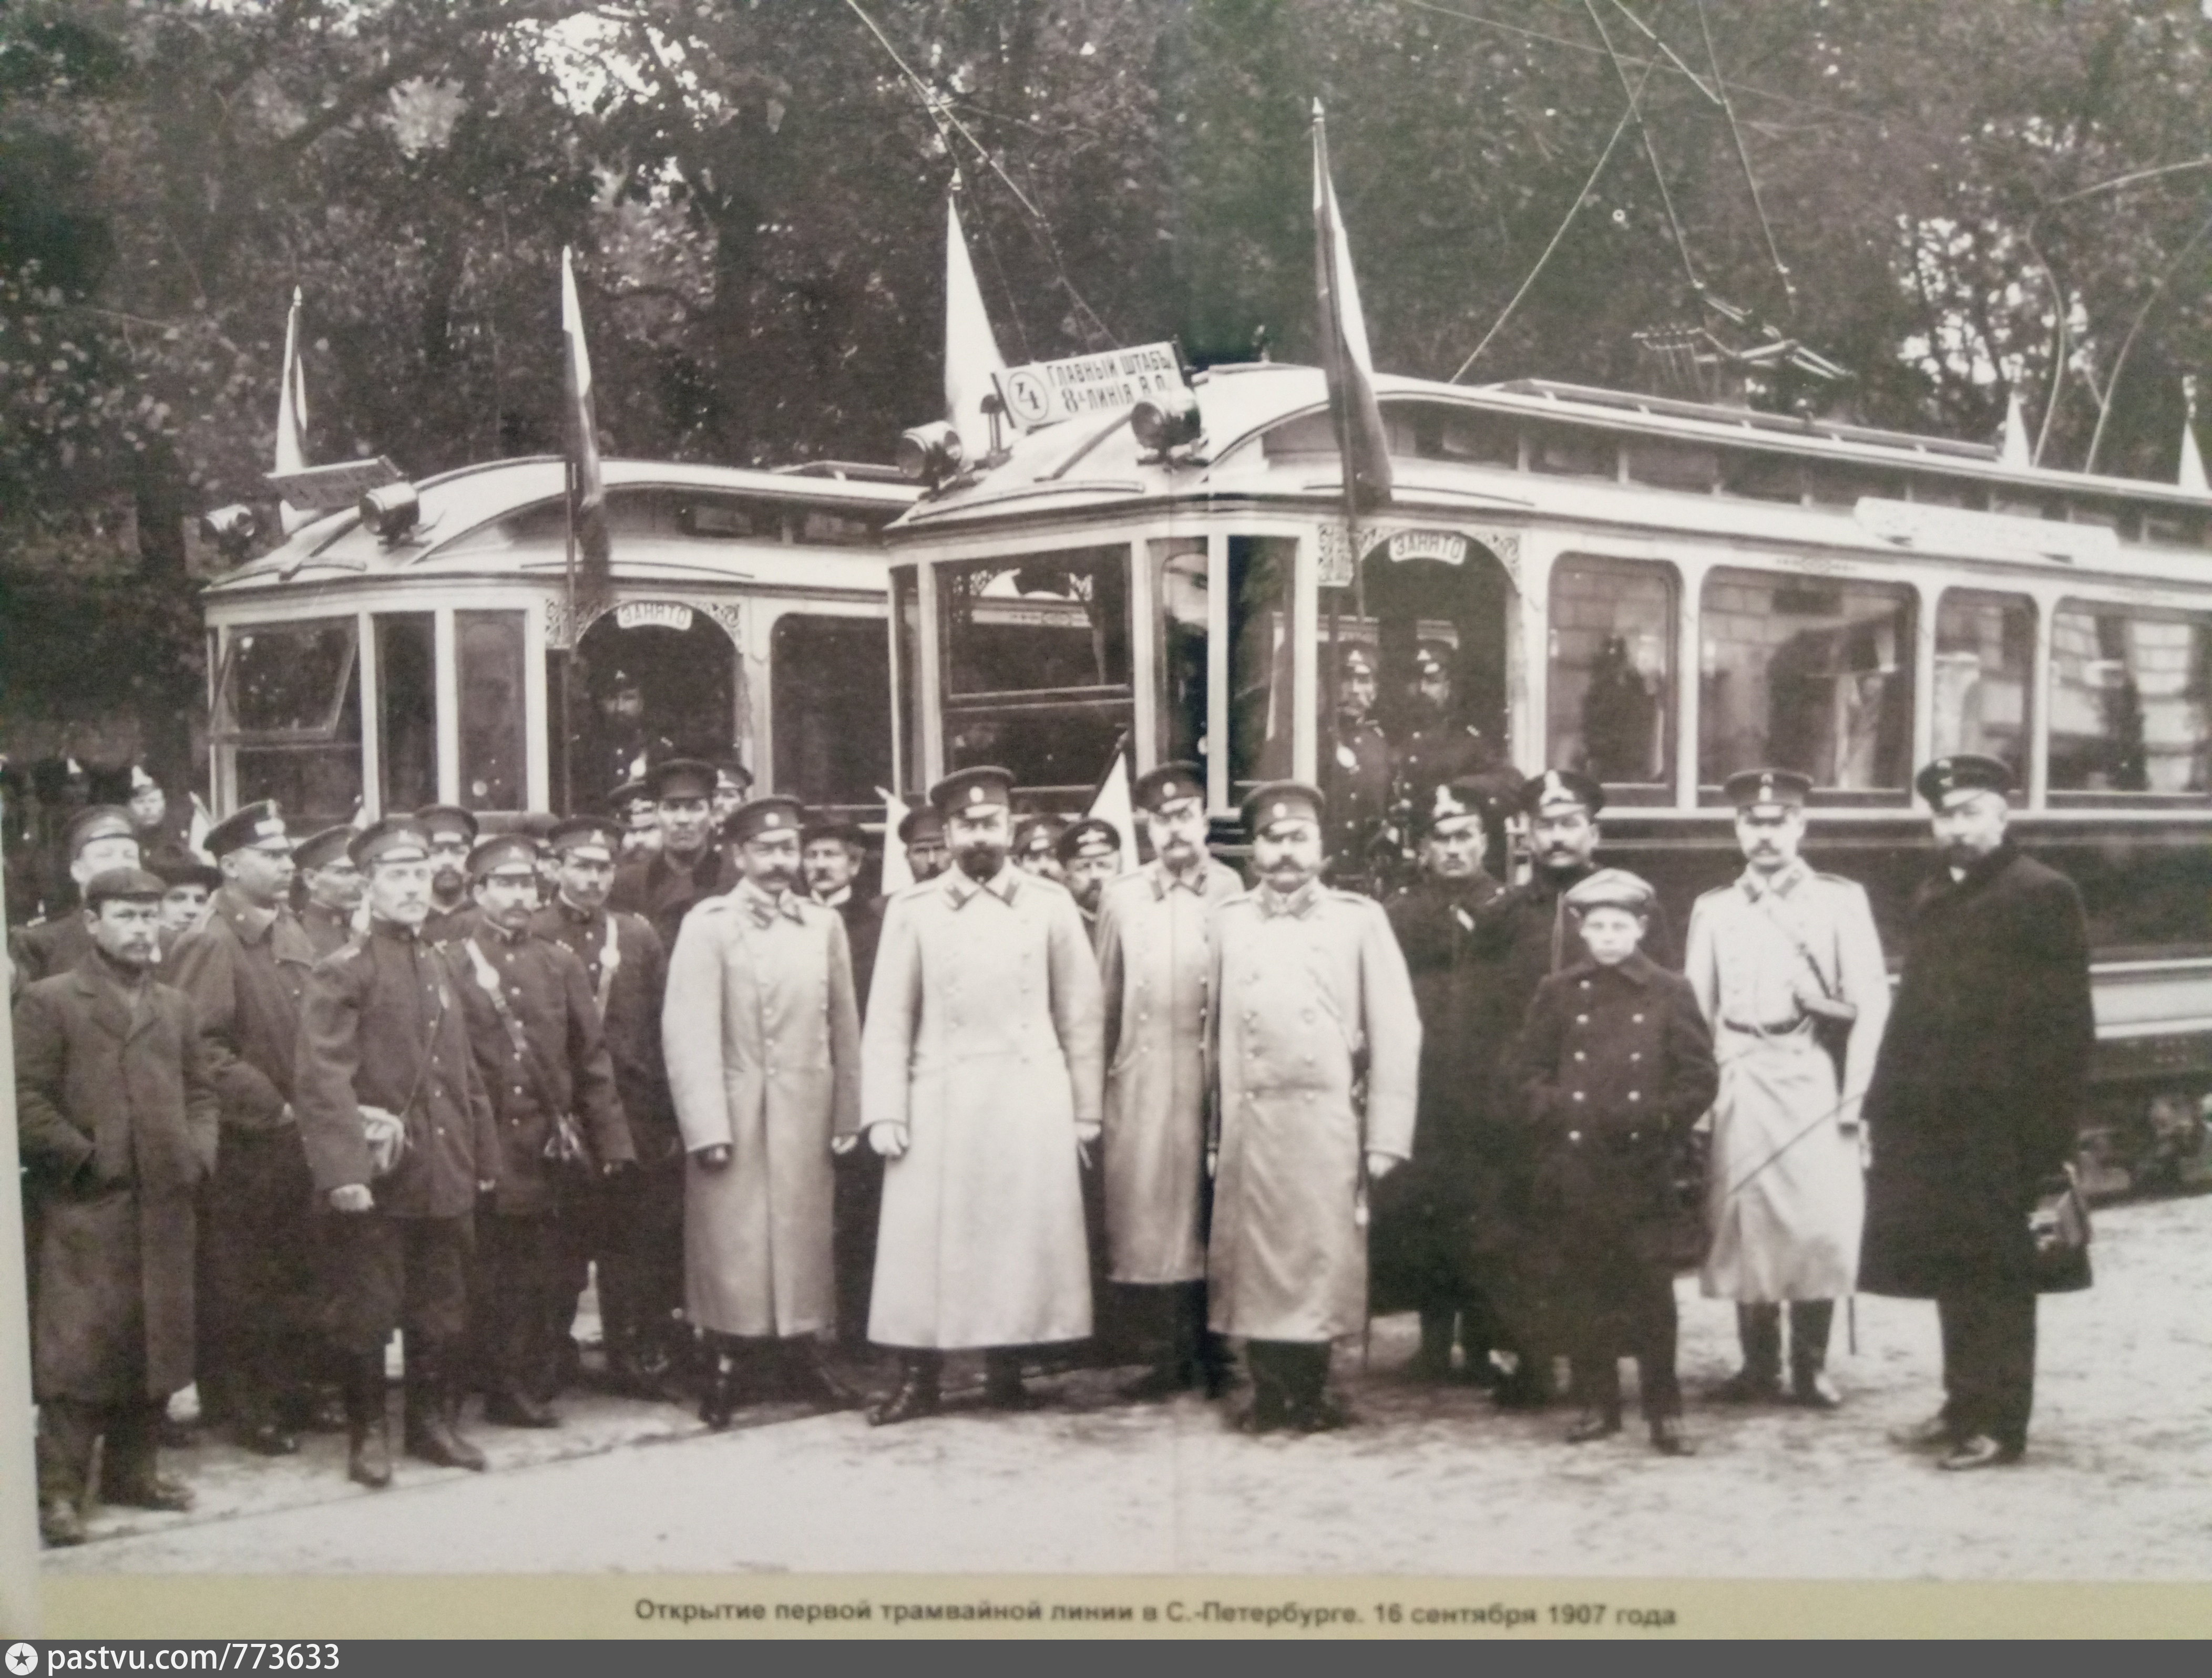 1907 год первый городской автобус. 29 Сентября 1907 открытие трамвайного движения в Петербурге. Первый трамвай в Санкт-Петербурге 1907. Открытие трамвайного движения в Санкт-Петербурге в 1907 году. Трамваи 1907 год Петербург.